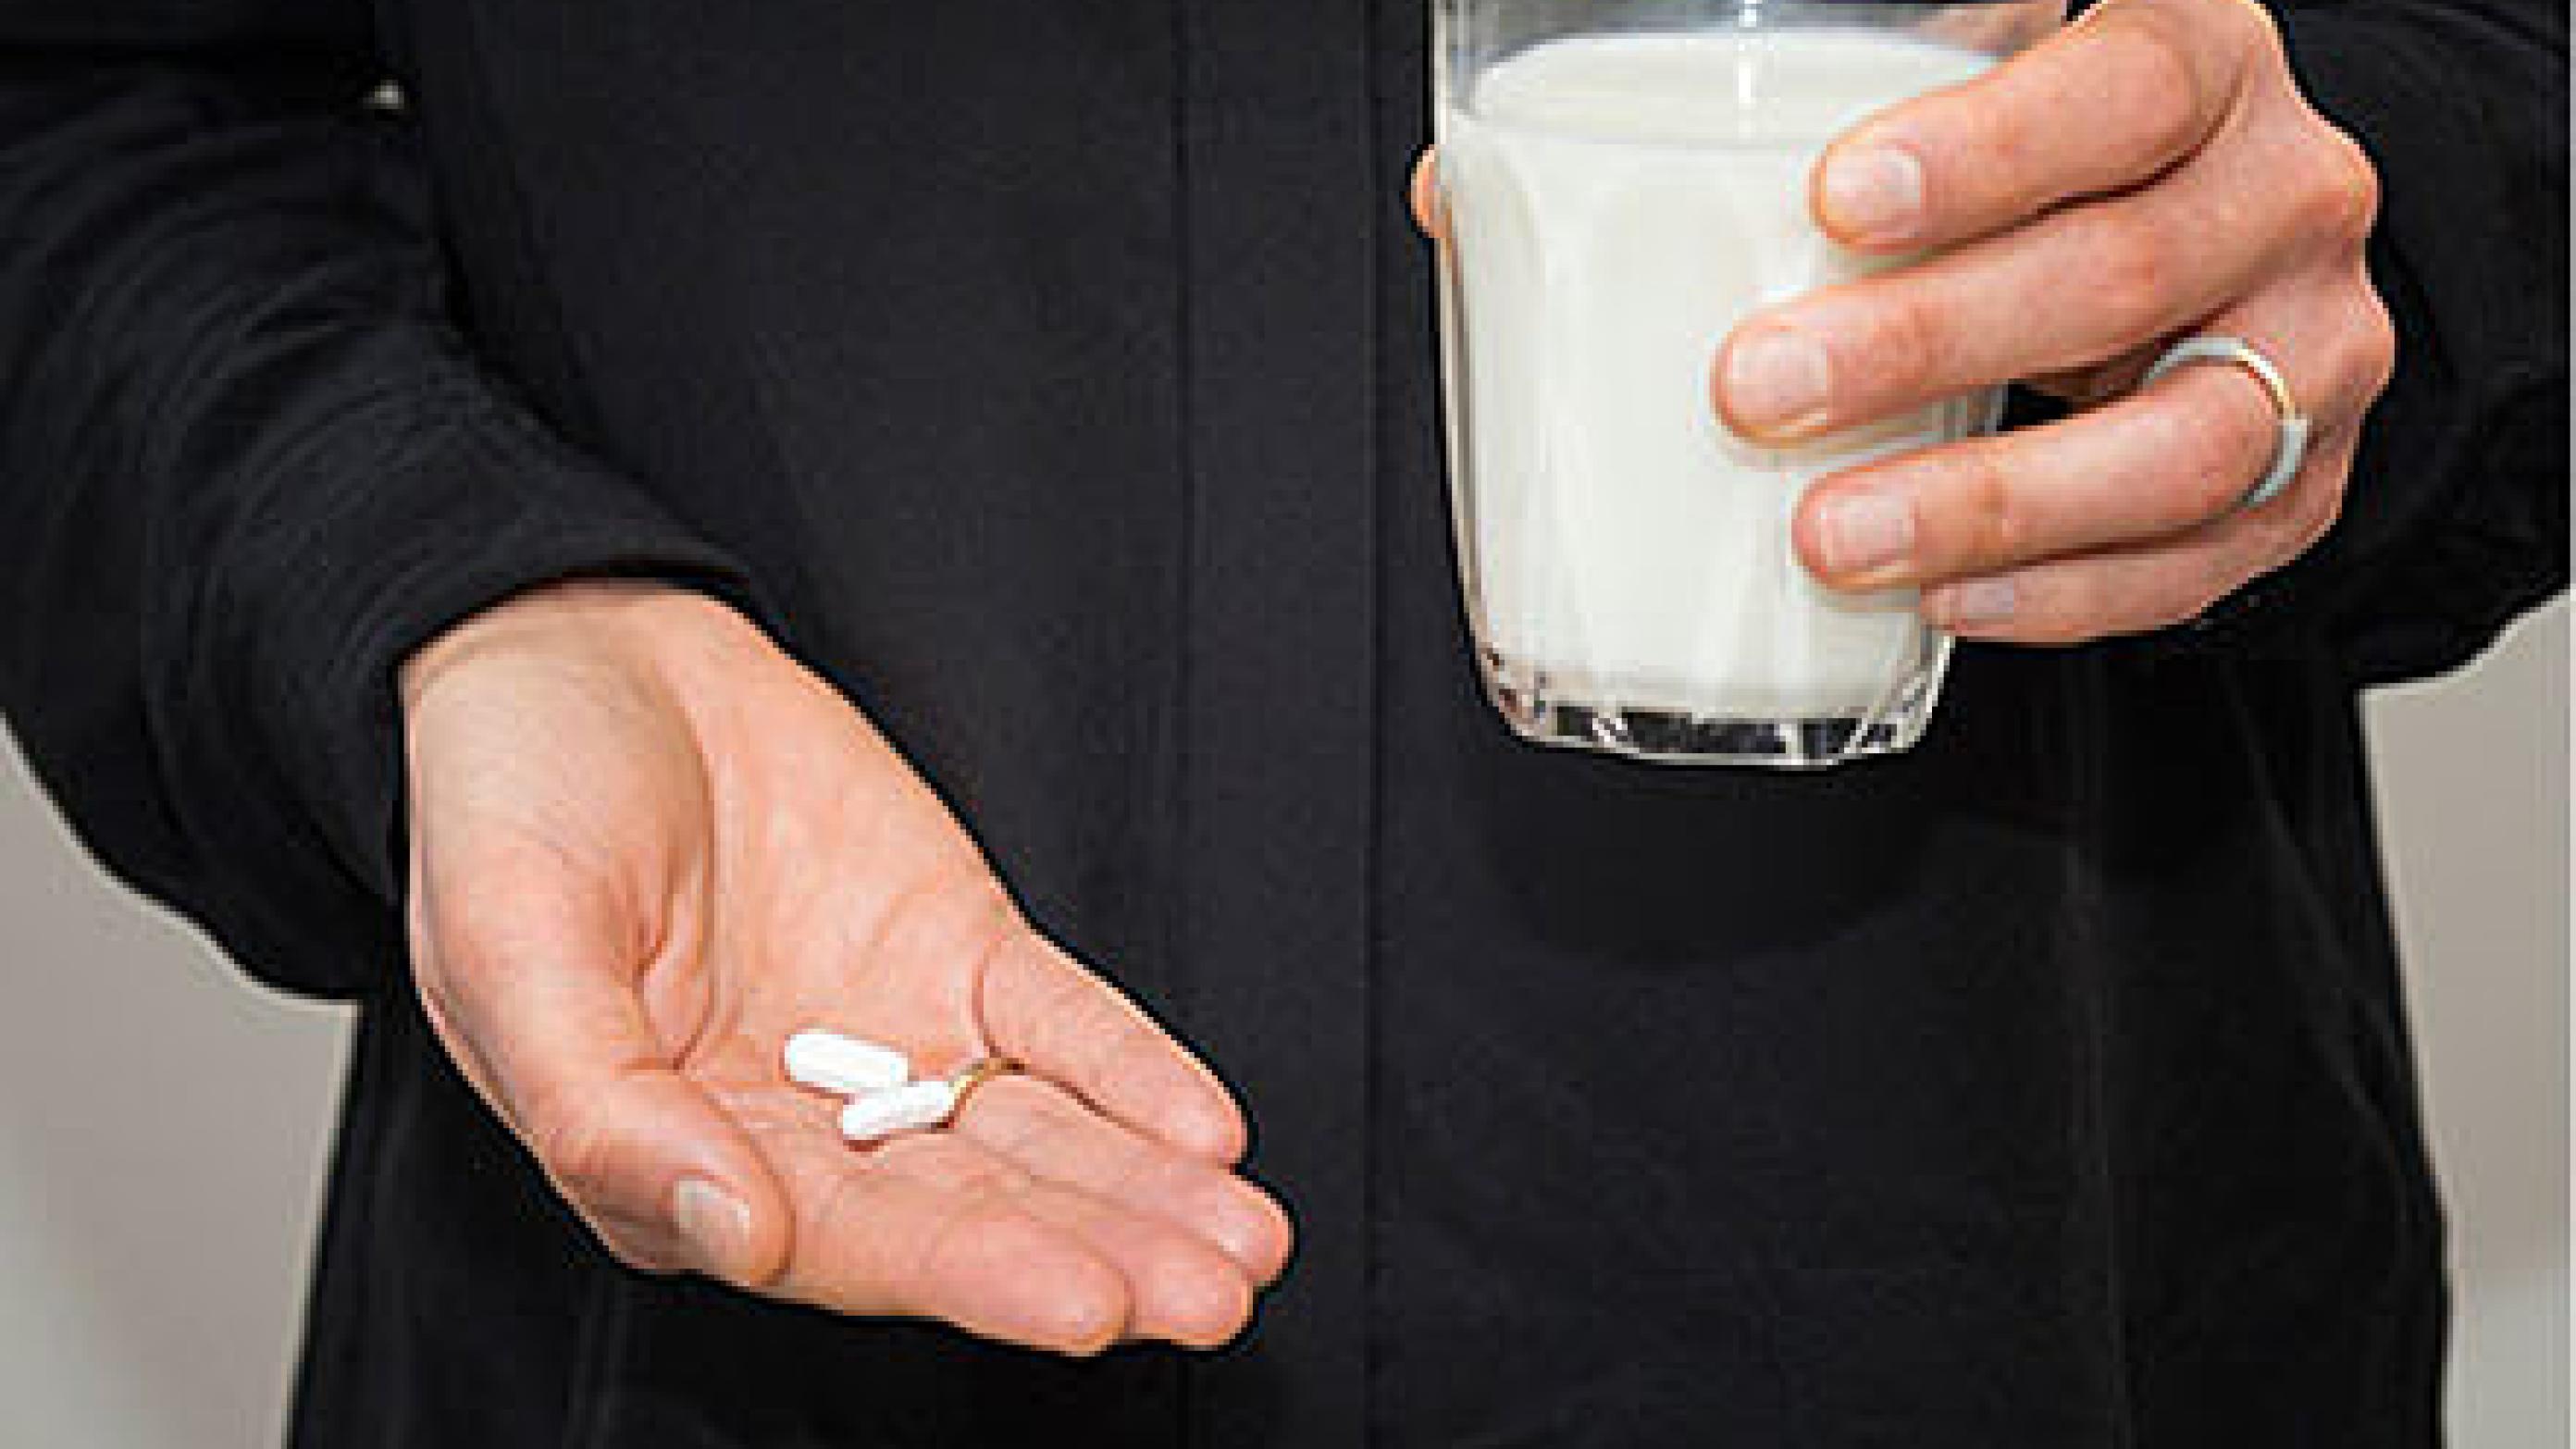 Personer med laktose­intolerans som regel er i stand til at indtage minimum 6-15 g laktose (svarende til 1-3 dl mælk) på én gang uden at få nogen symptomer.